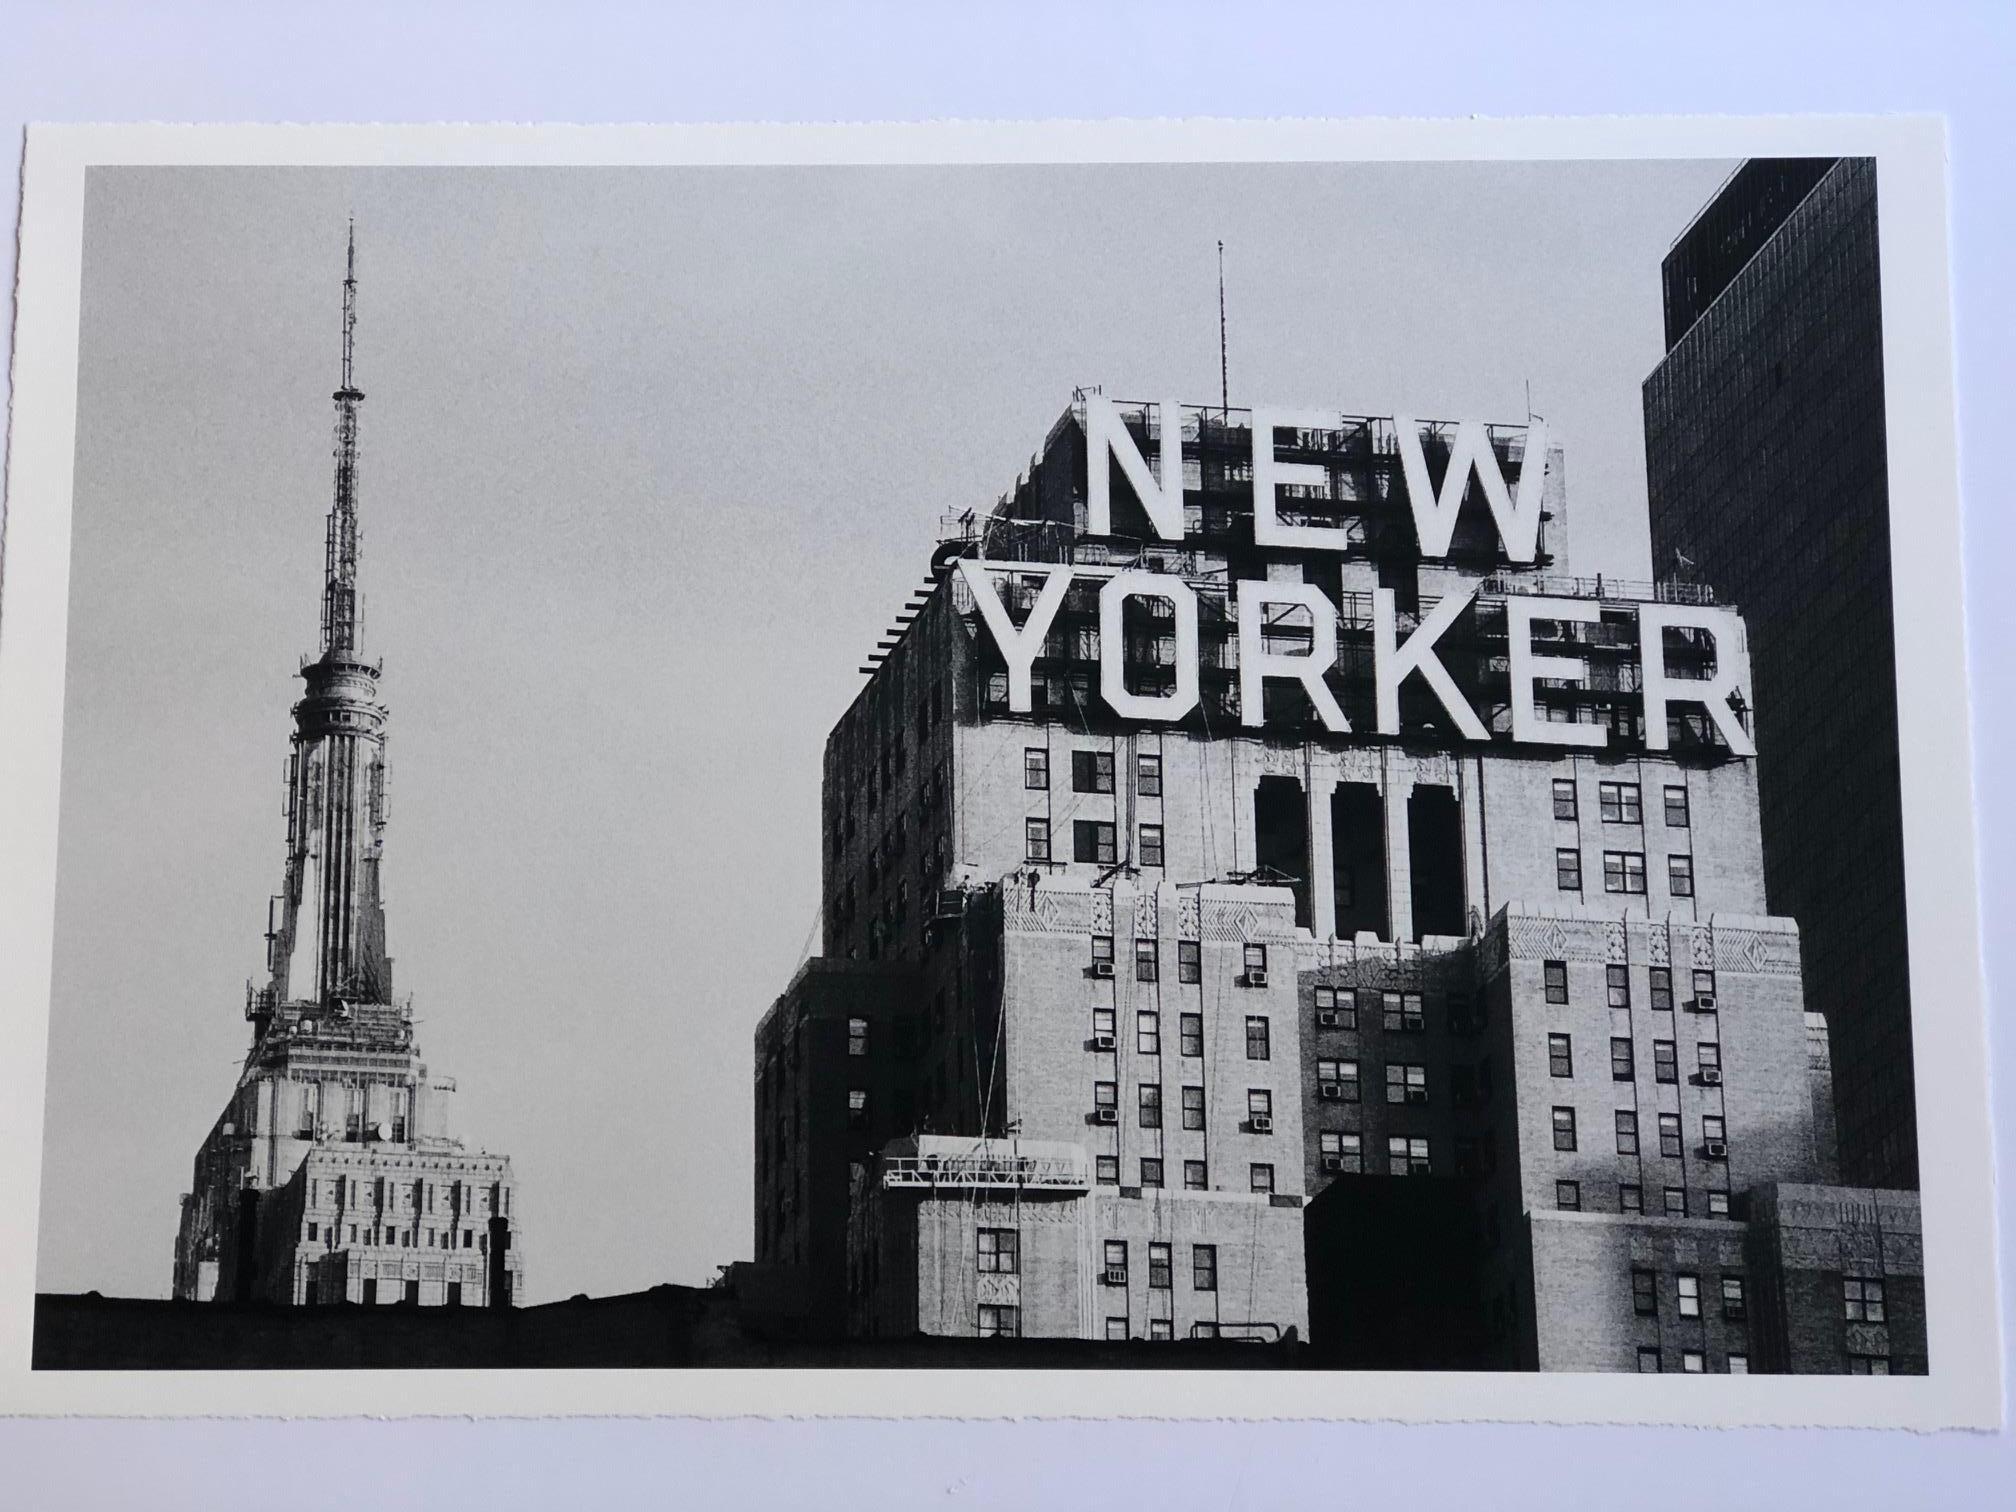 New Yorker 50,8 x 76,2 cm (20 x 30 Zoll), ungerahmt, mit Büttenrand (Grau), Black and White Photograph, von Alejandro Cerutti